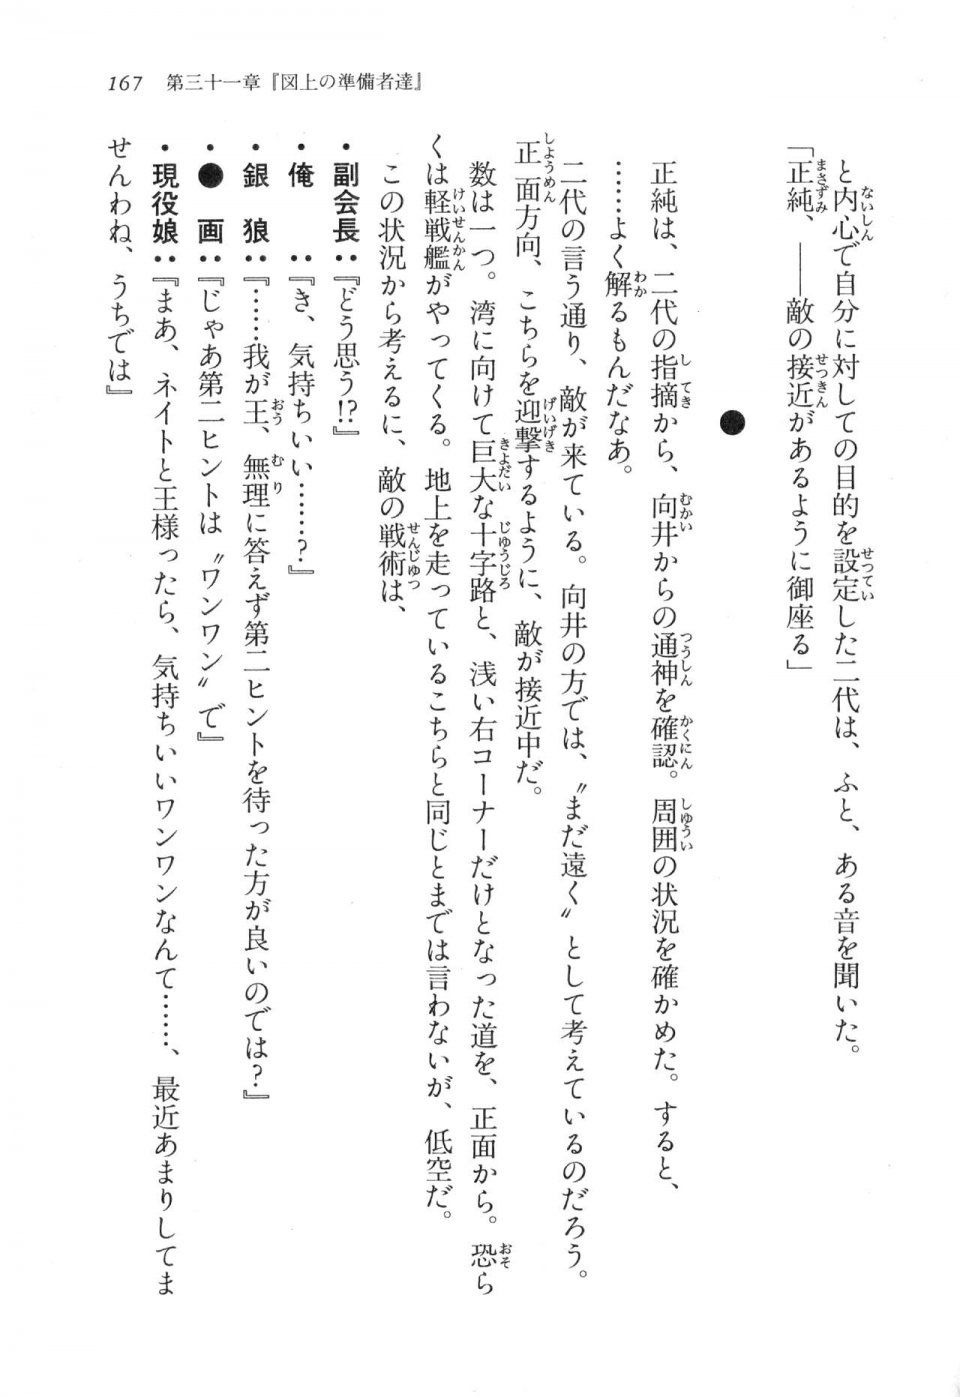 Kyoukai Senjou no Horizon LN Vol 17(7B) - Photo #167